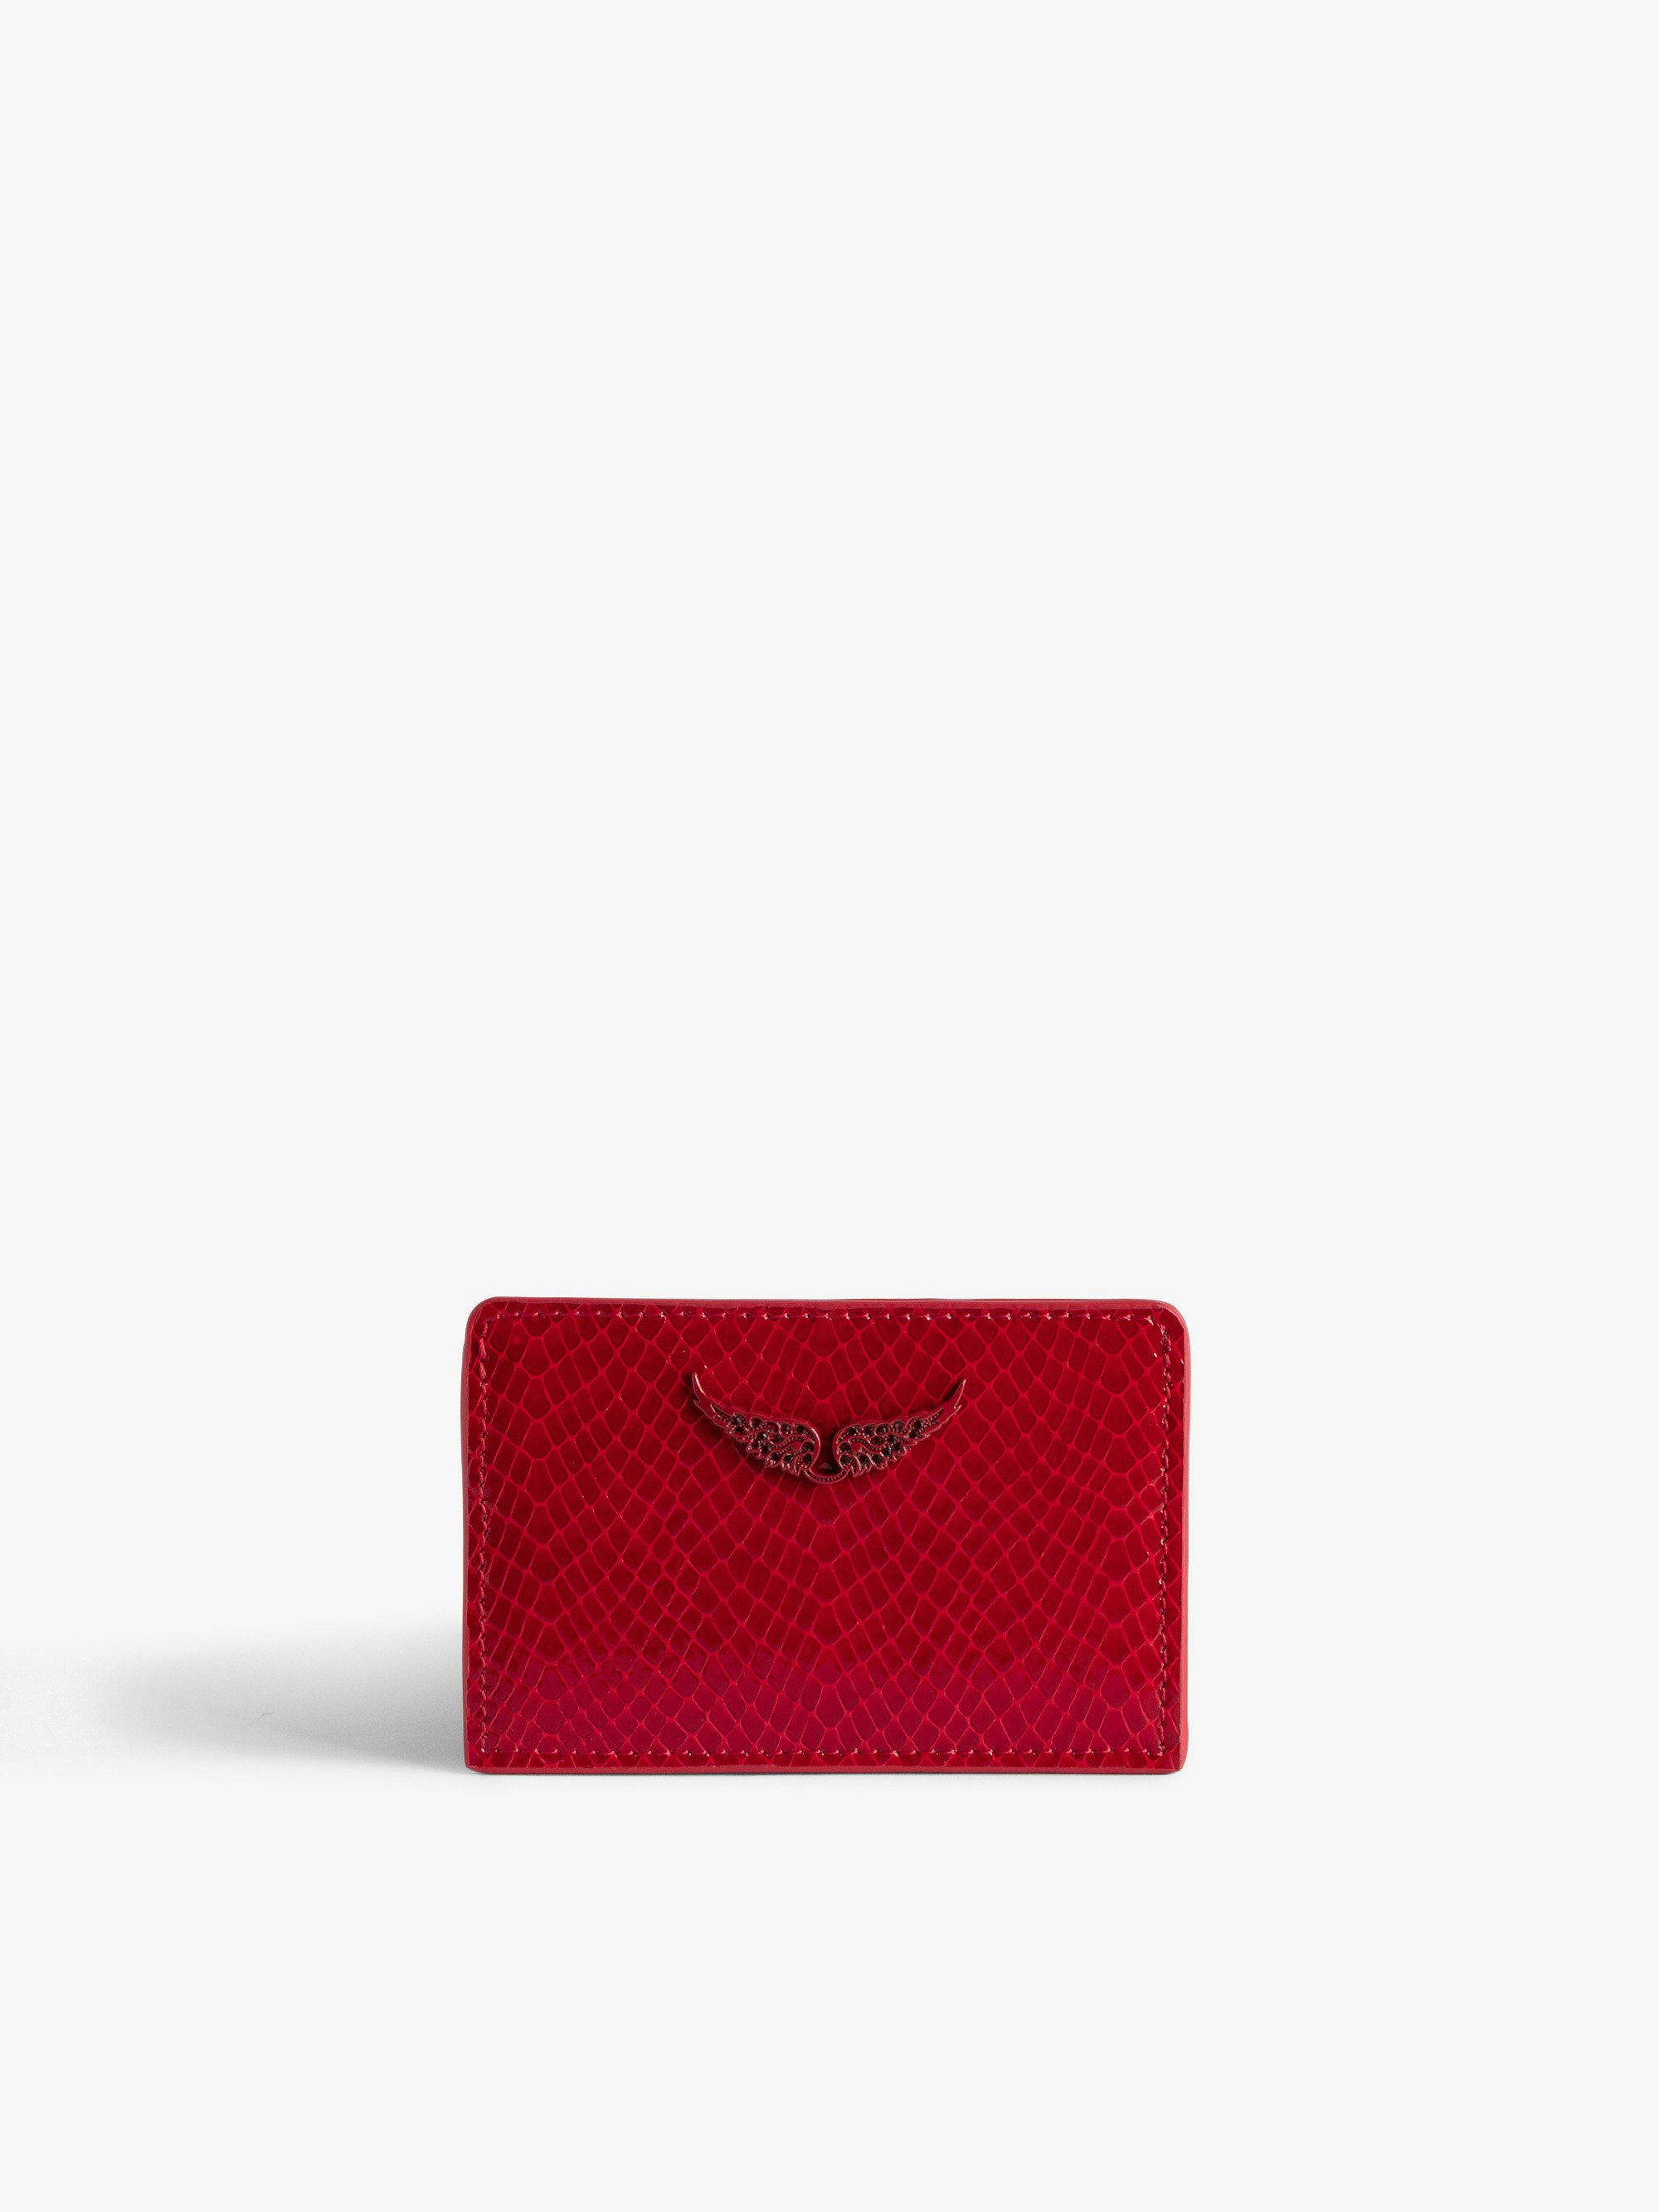 Kartenetui ZV Pass Glossy Wild Geprägt - Kartenetui aus glänzendem Leder in Rot mit Python-Effekt und Flügel-Charm mit Strasssteinen für Damen.